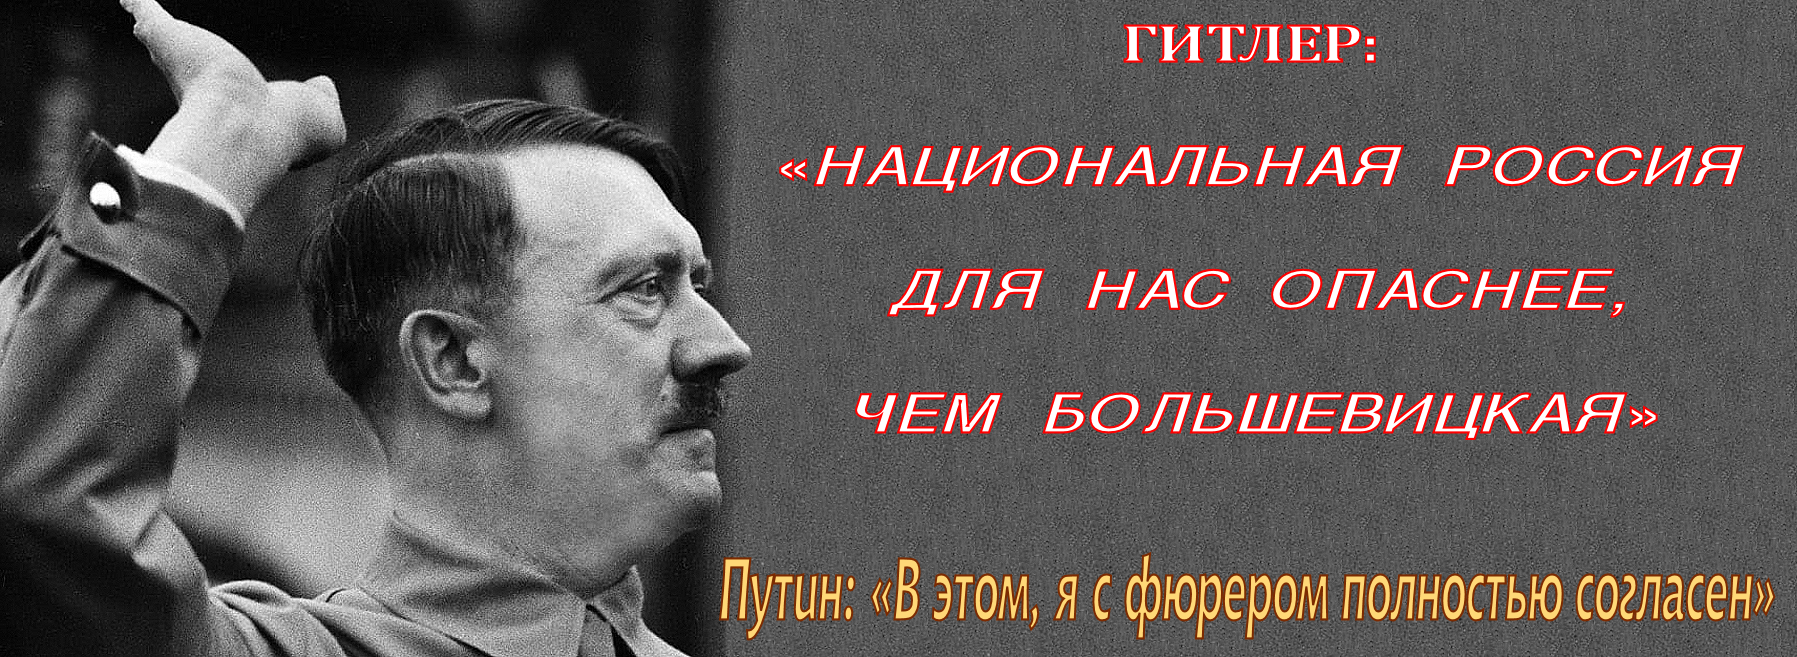 «Для «Национальной России» Путин опаснее, чем Гитлер». — Жаль, что это понимают только криптофашист М.В. Назаров и ✠Мы-Фашисты-Мининисты✠. 